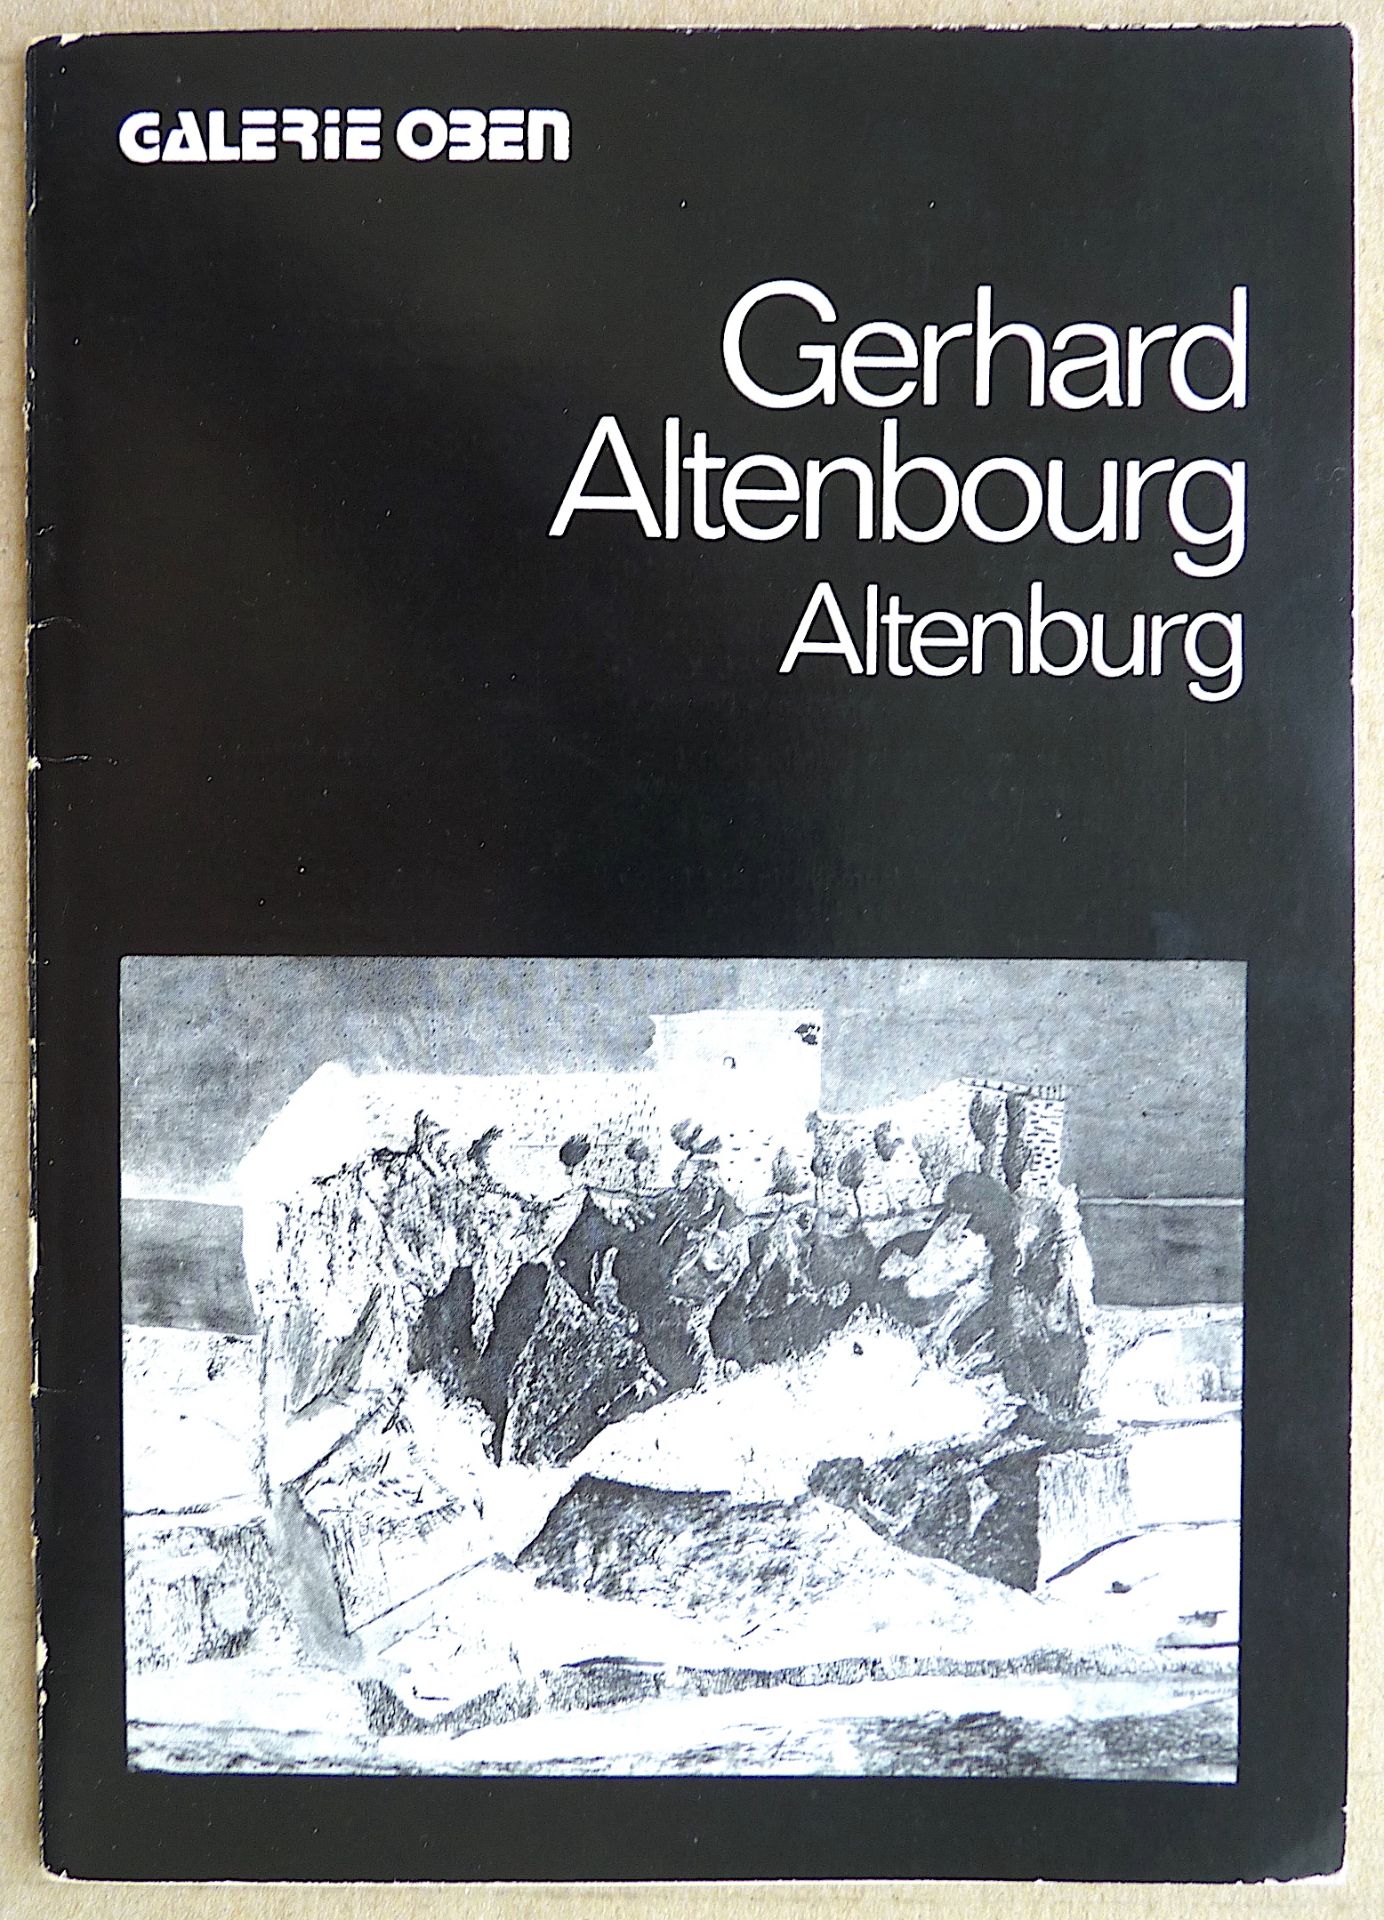 ALTENBOURG, GERHARD (Gerhard Ströch): "GERHARD ALTENBOURG. Altenburg", 1981 - Image 2 of 2